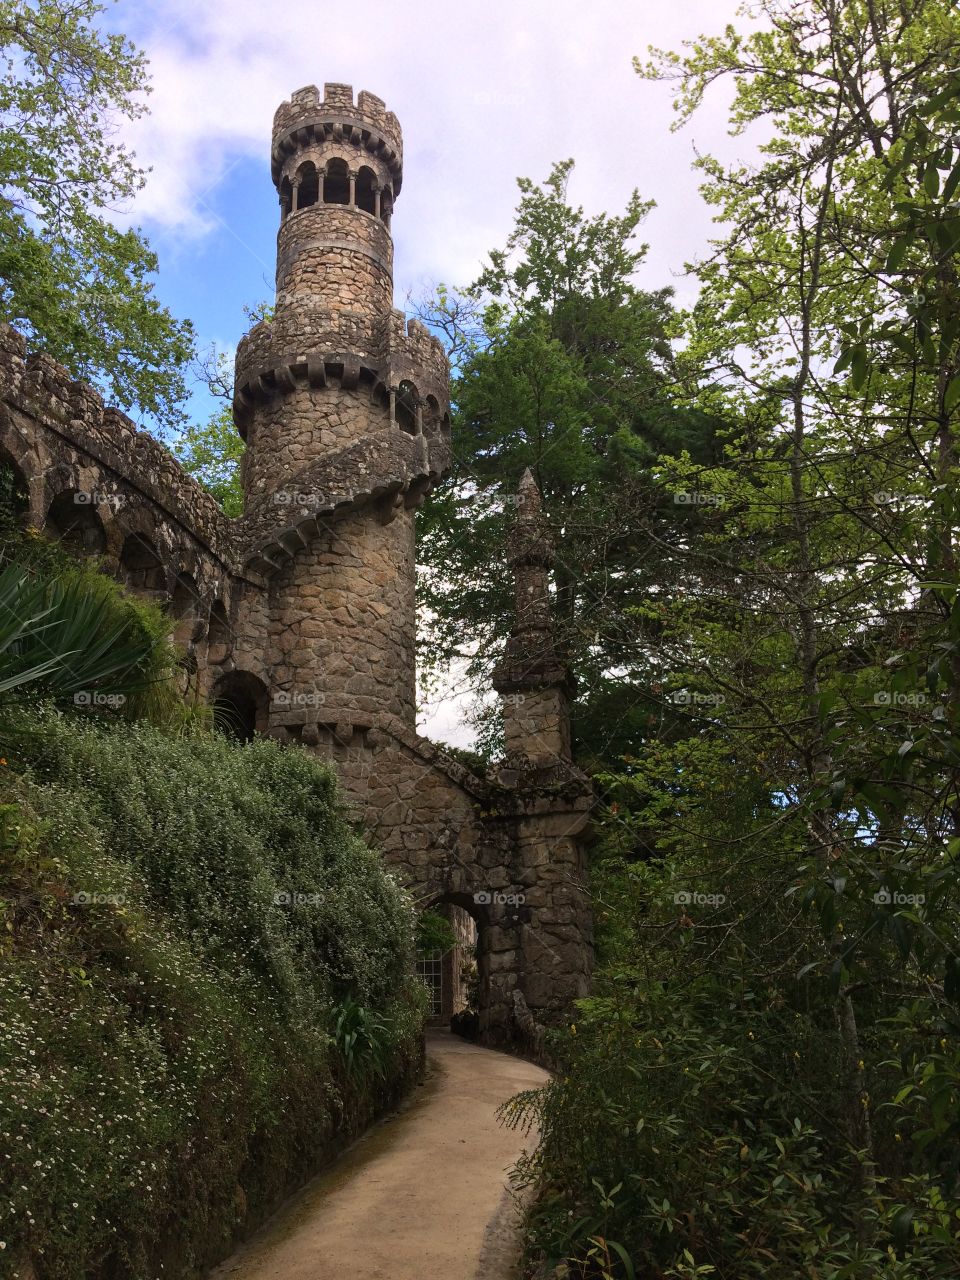 Quinta da Regaleira Tower